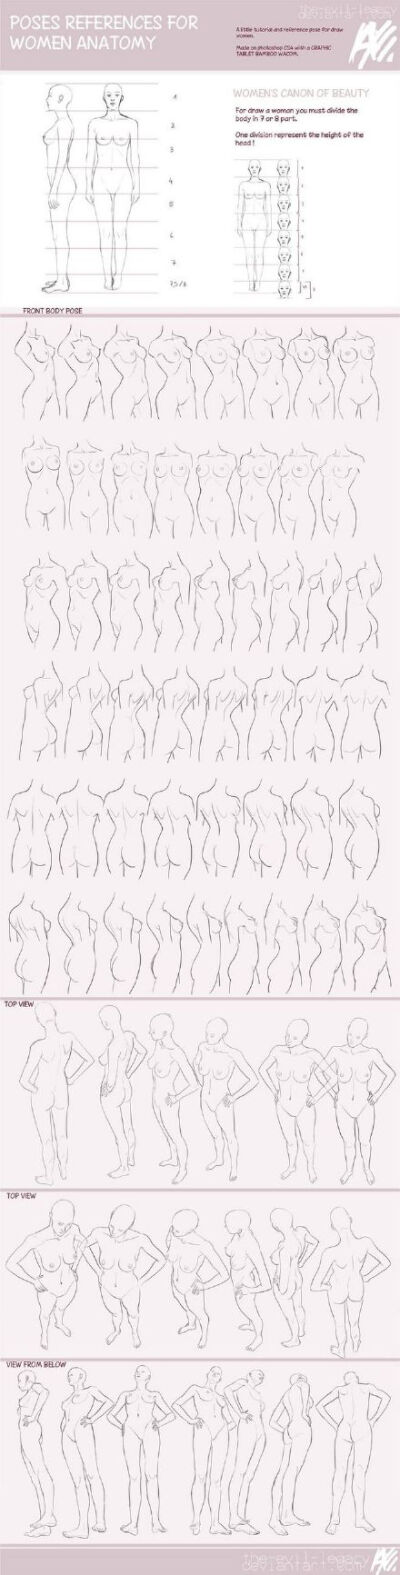 sai资源库# 百家人体结构画法,人体骨骼结构和肌肉走势分析参考,女性